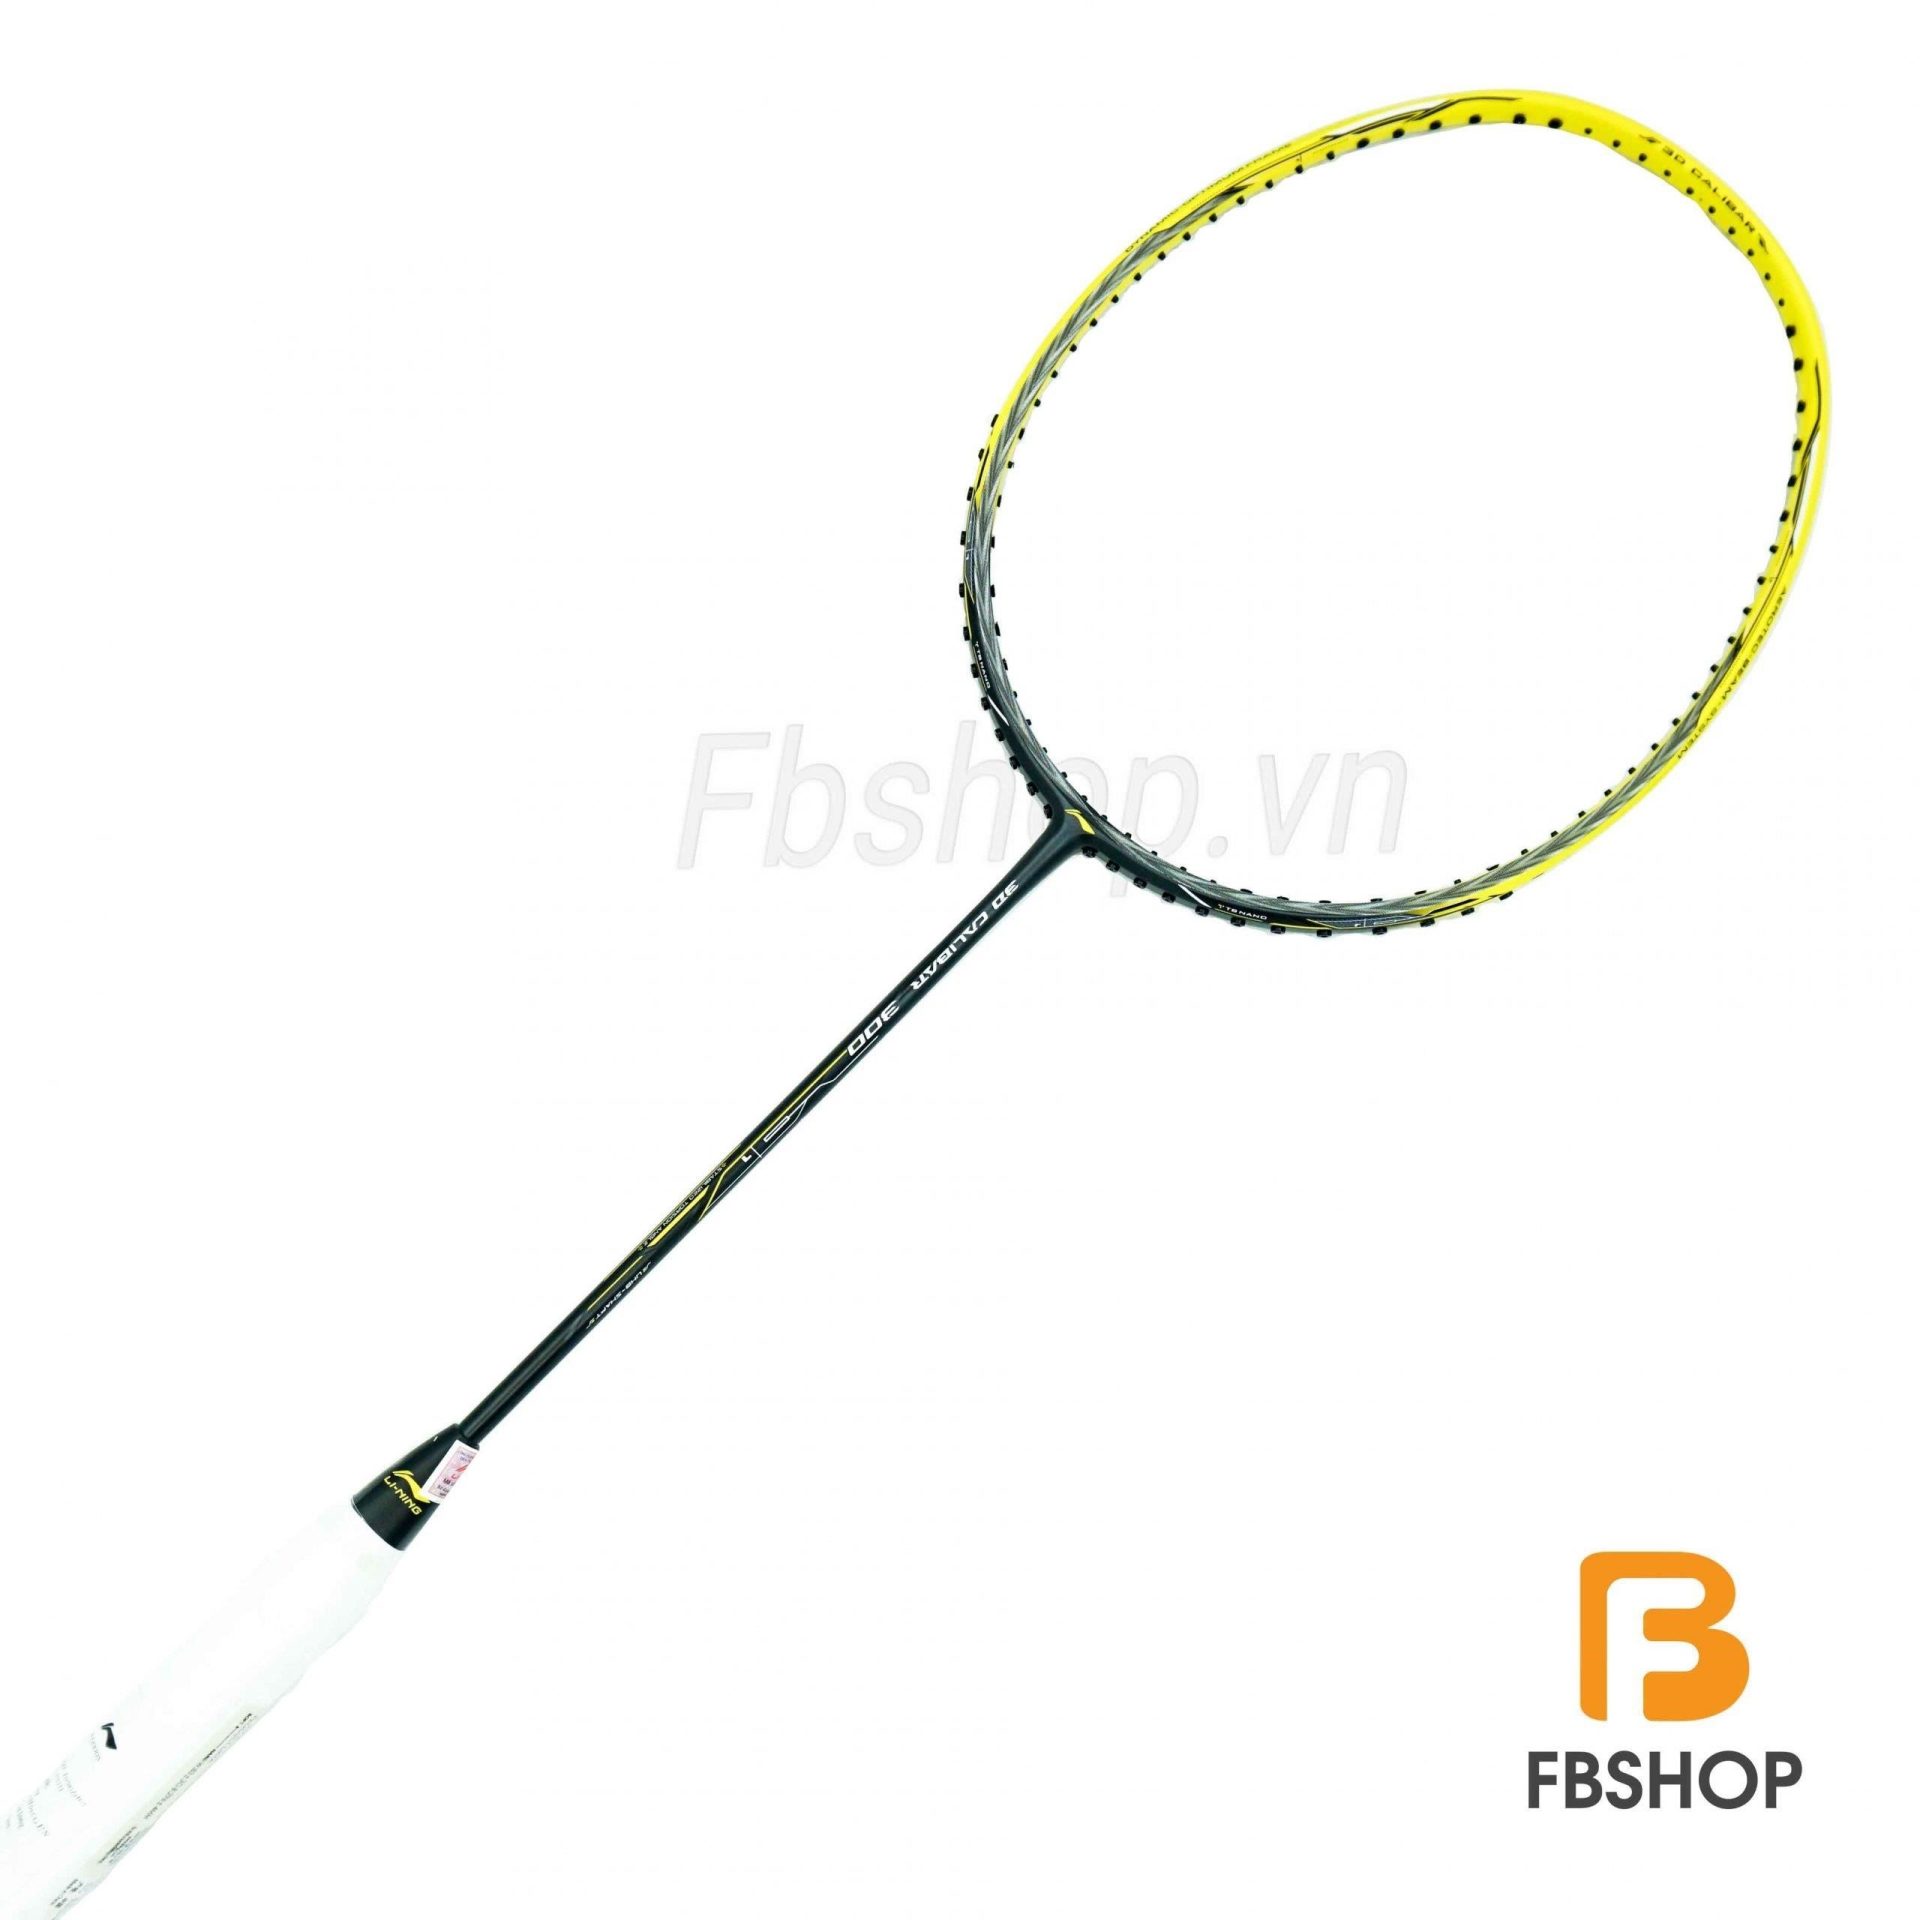 Vợt cầu lông Lining Calibar 300 là một trong những mẫu vợt chuyên nghiệp được ưa chuộng trong giới cầu lông. Với thiết kế hiện đại và công nghệ tiên tiến, vợt Calibar 300 mang lại sự linh hoạt và sức mạnh tuyệt vời cho người chơi.